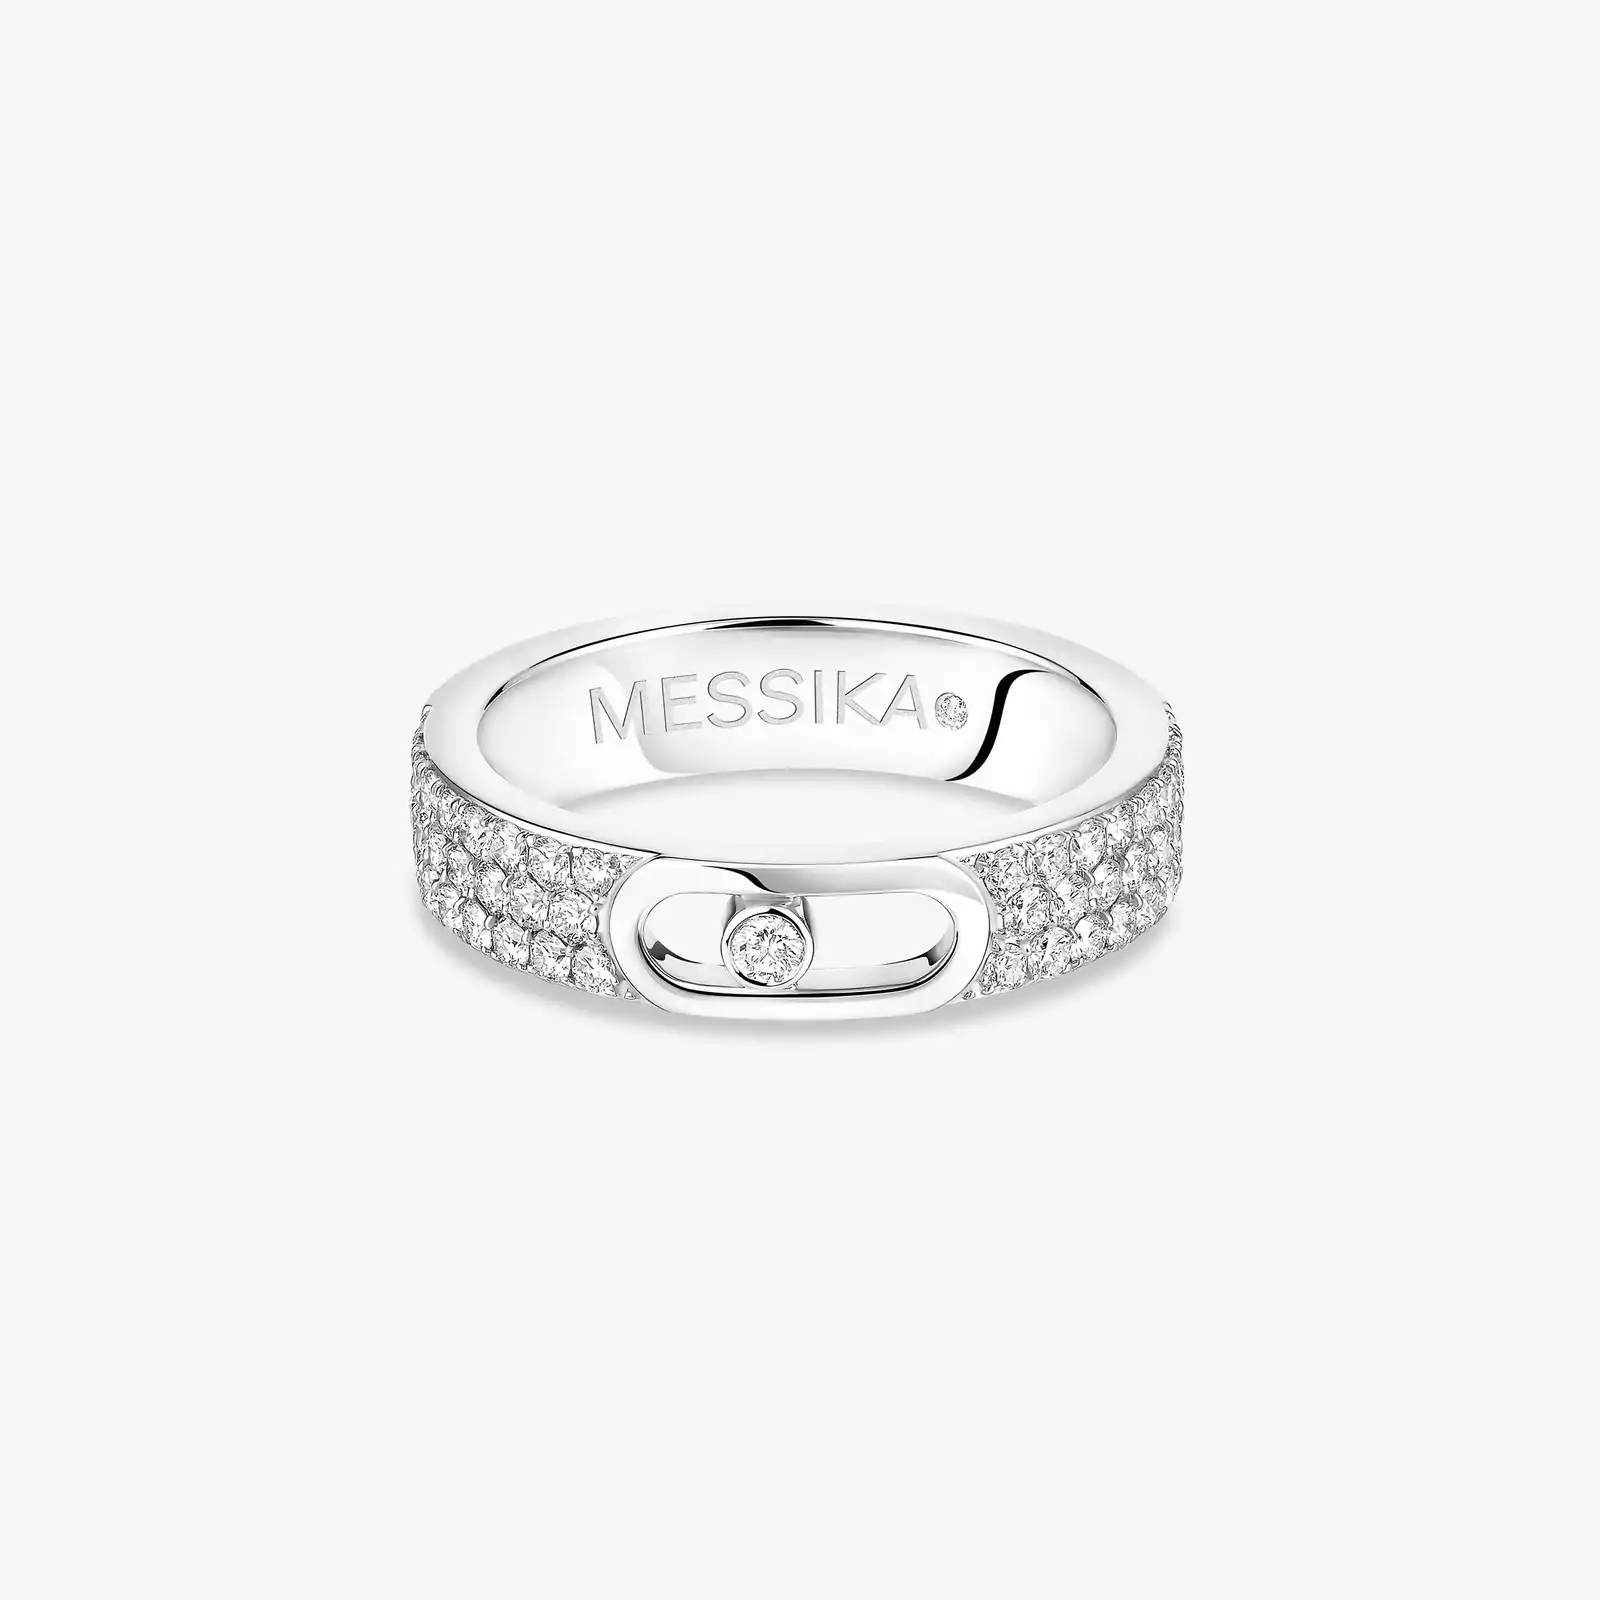 Move Joaillerie Pavé Wedding Ring White Gold For Her Diamond Ring 13555-WG